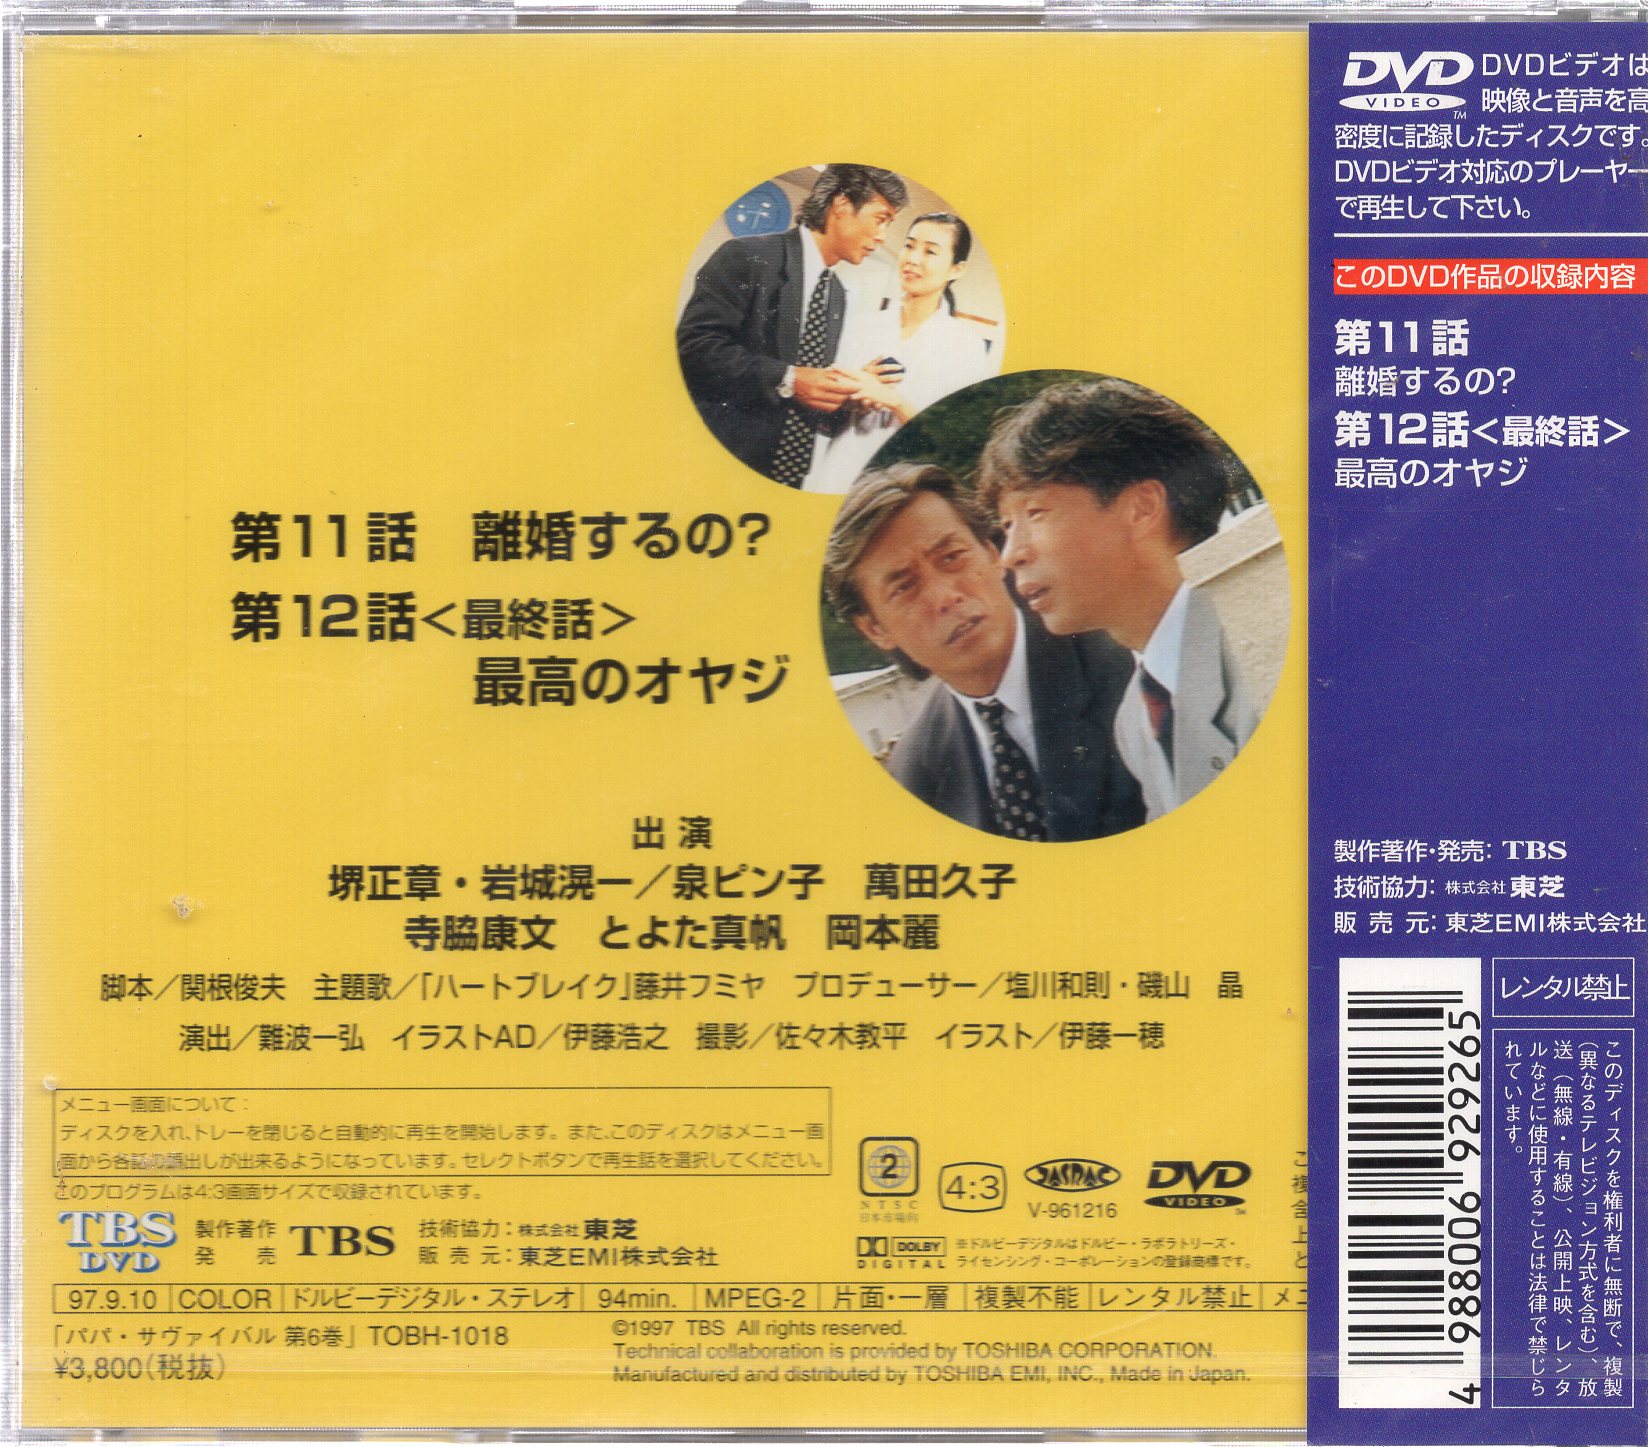 DVD「パパサヴァイバル 全6巻」堺正章 岩城滉一 泉ピン子 - DVD